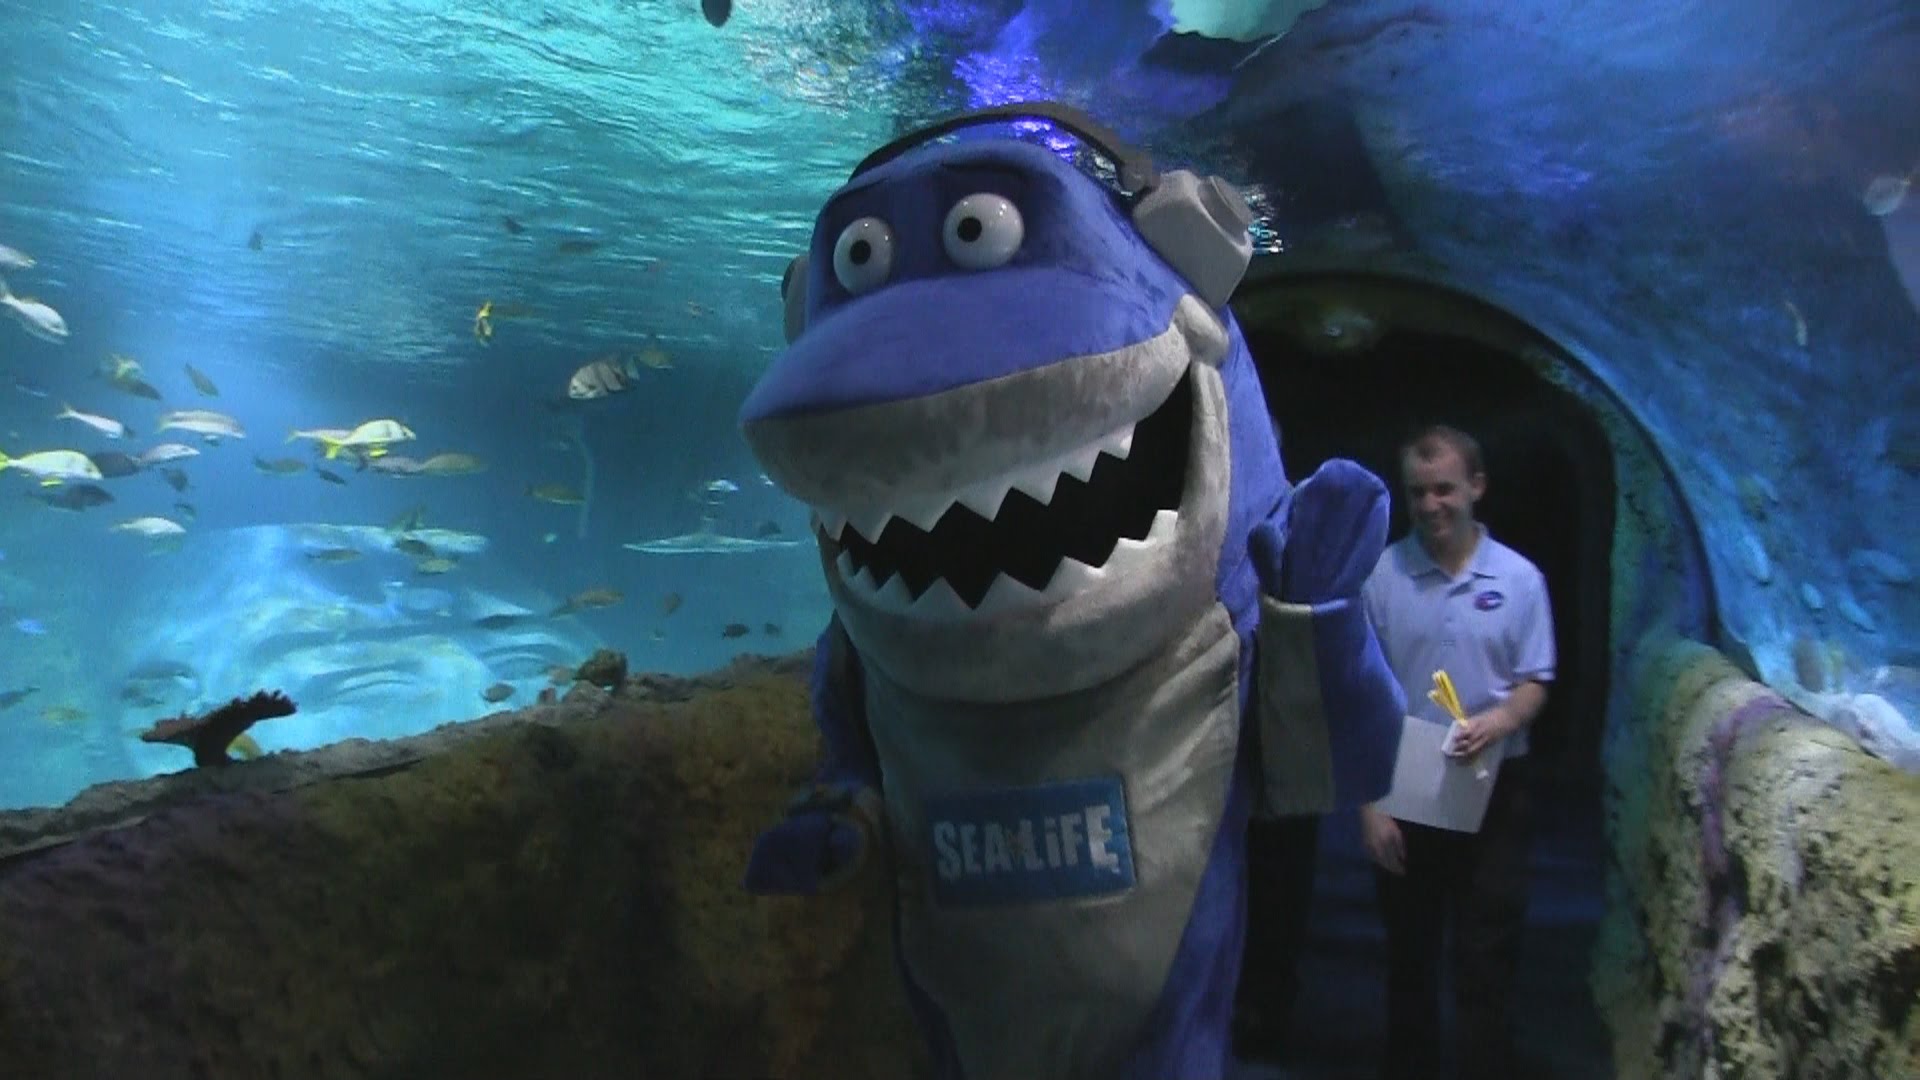 Inside Sea Life Aquarium Orlando at I-Drive 360 - YouTube